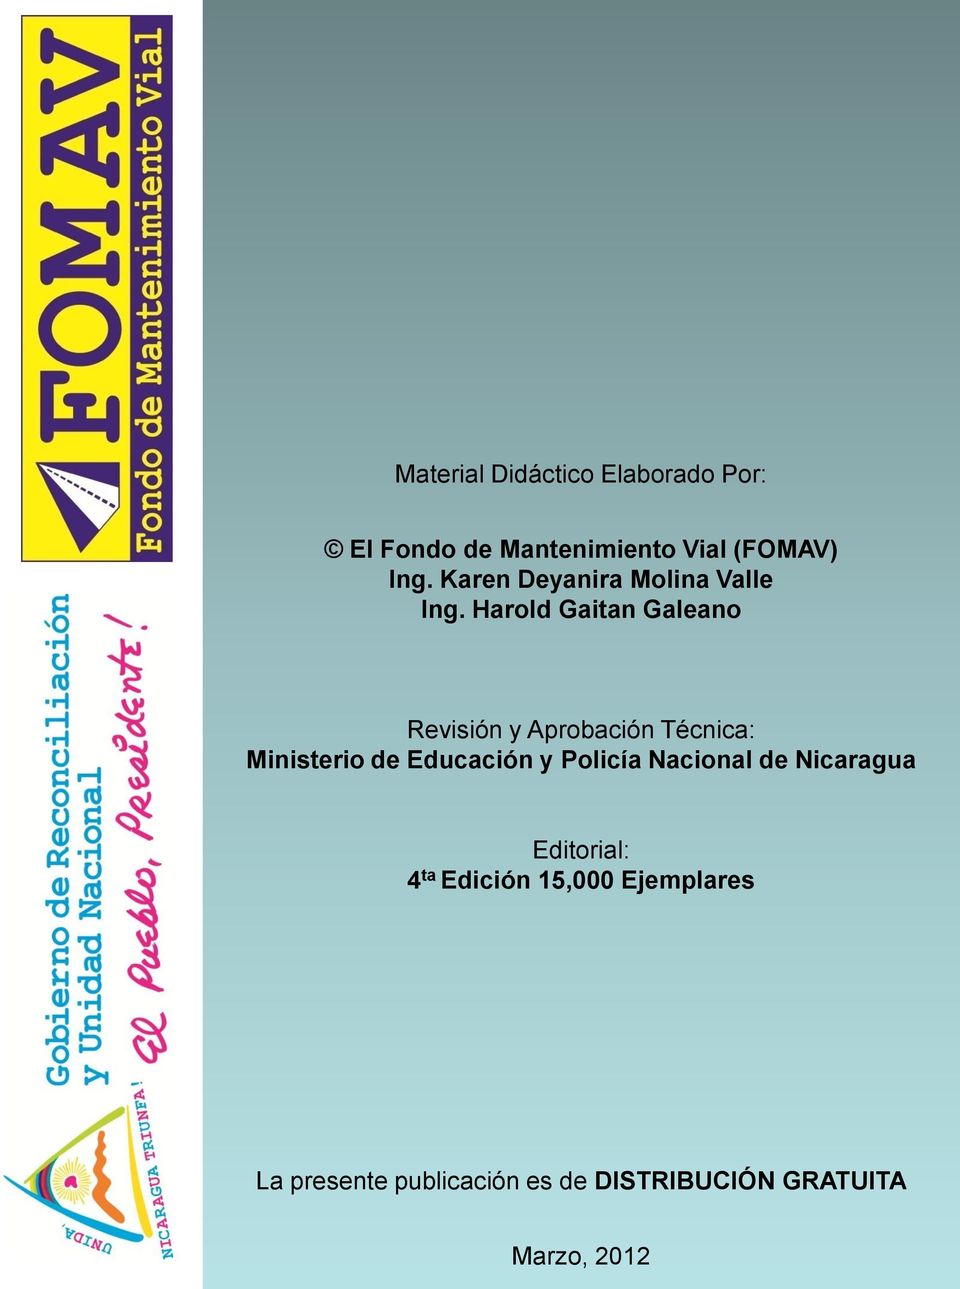 Harold Gaitan Galeano Revisión y Aprobación Técnica: Ministerio de Educación y